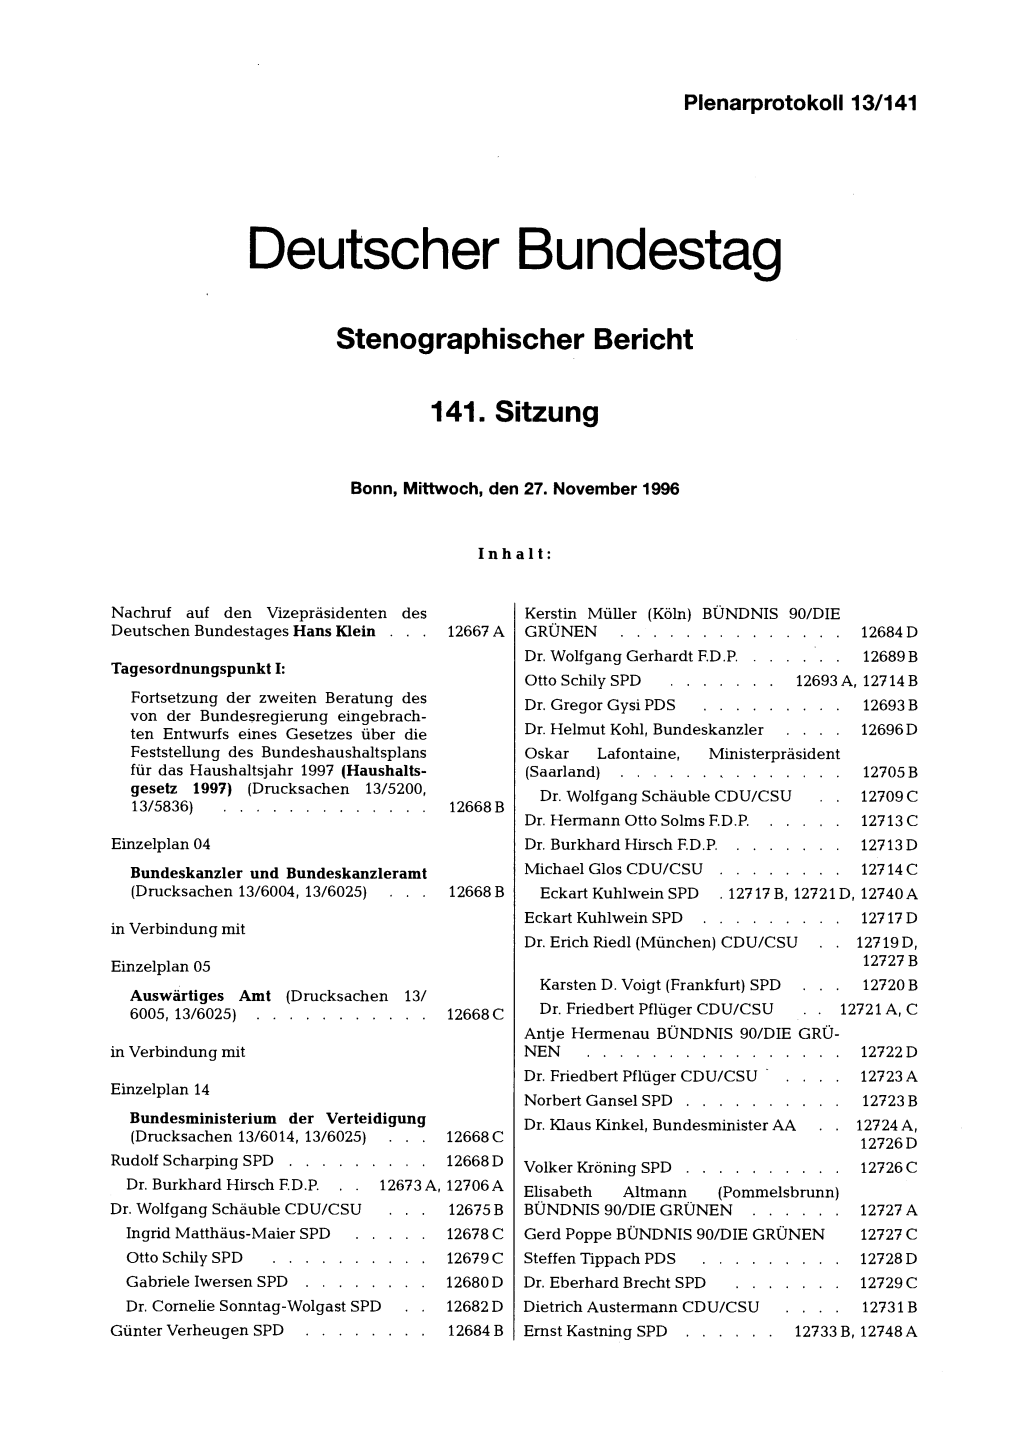 Deutscher Bundestag Stenographischer Bericht